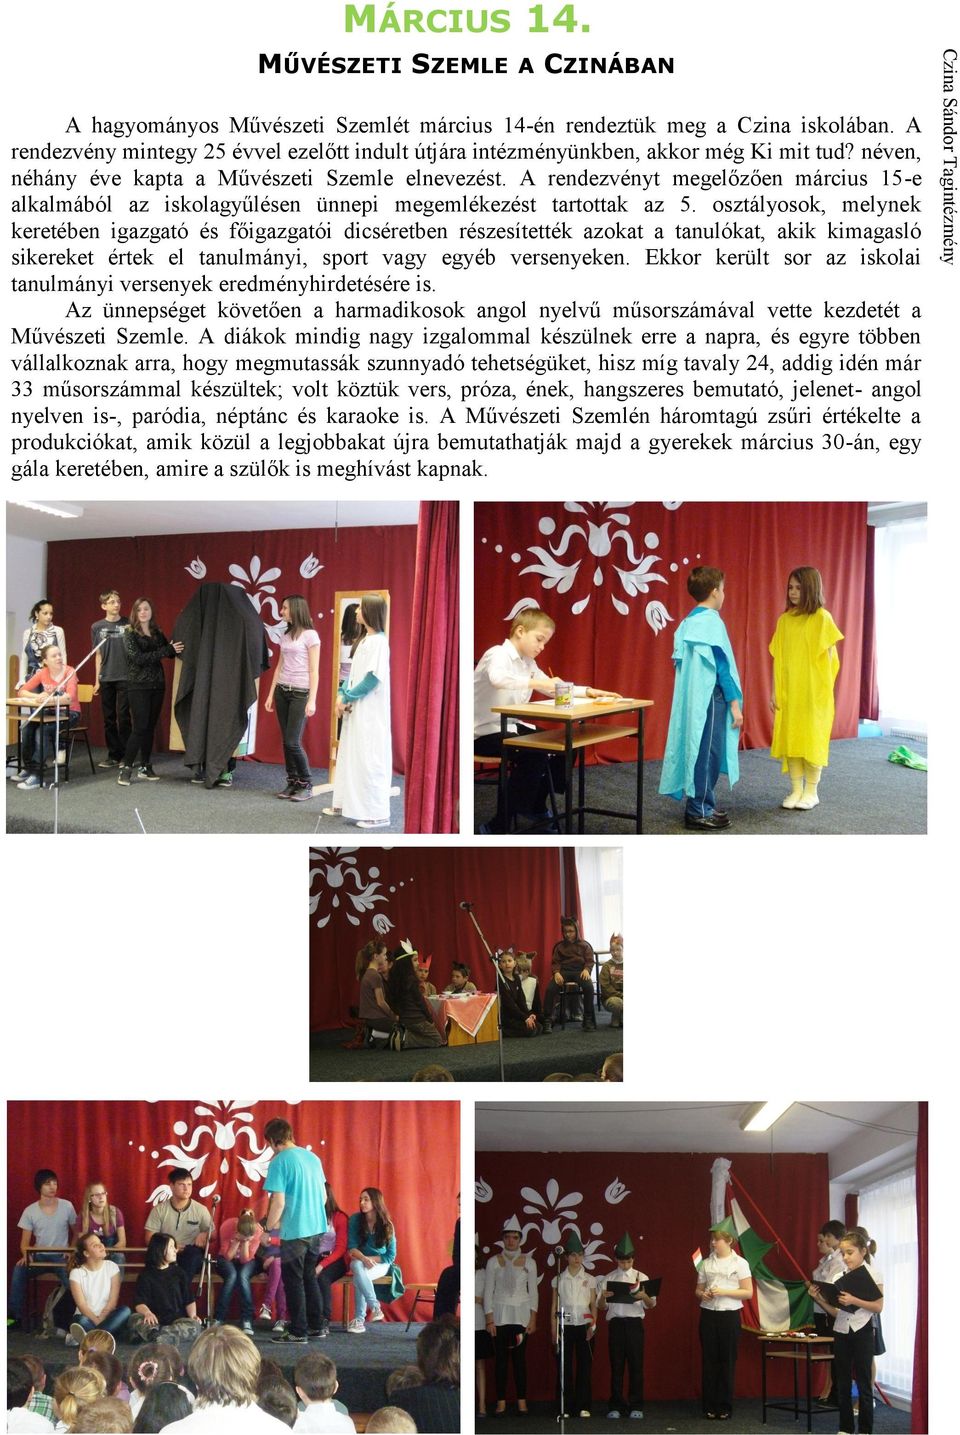 A rendezvényt megelőzően március 15-e alkalmából az iskolagyűlésen ünnepi megemlékezést tartottak az 5.